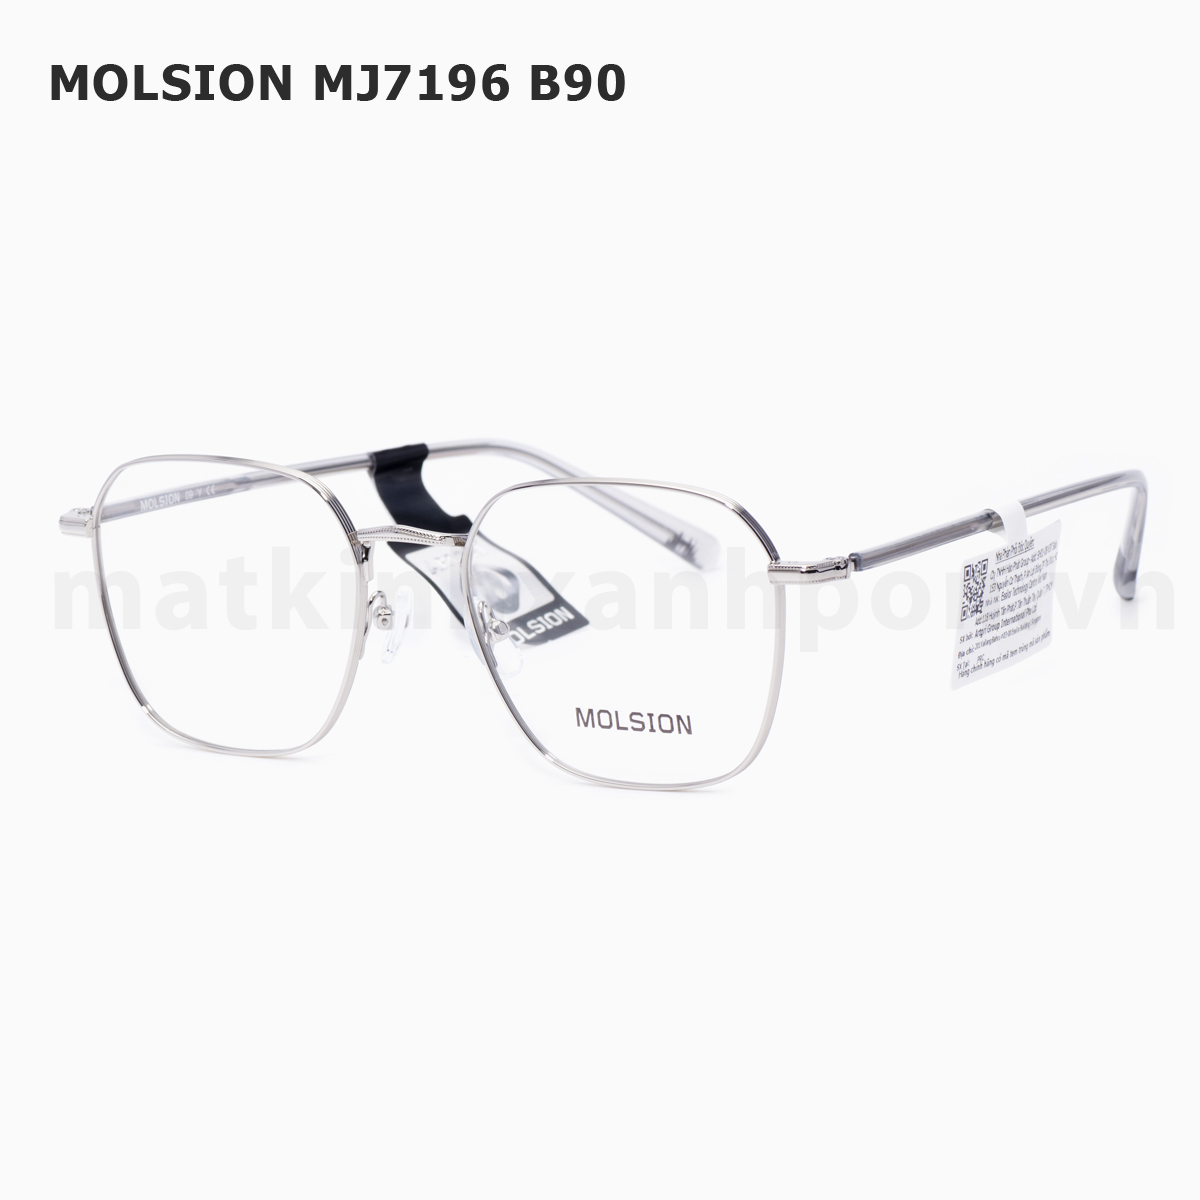 Molsion MJ7196 B90